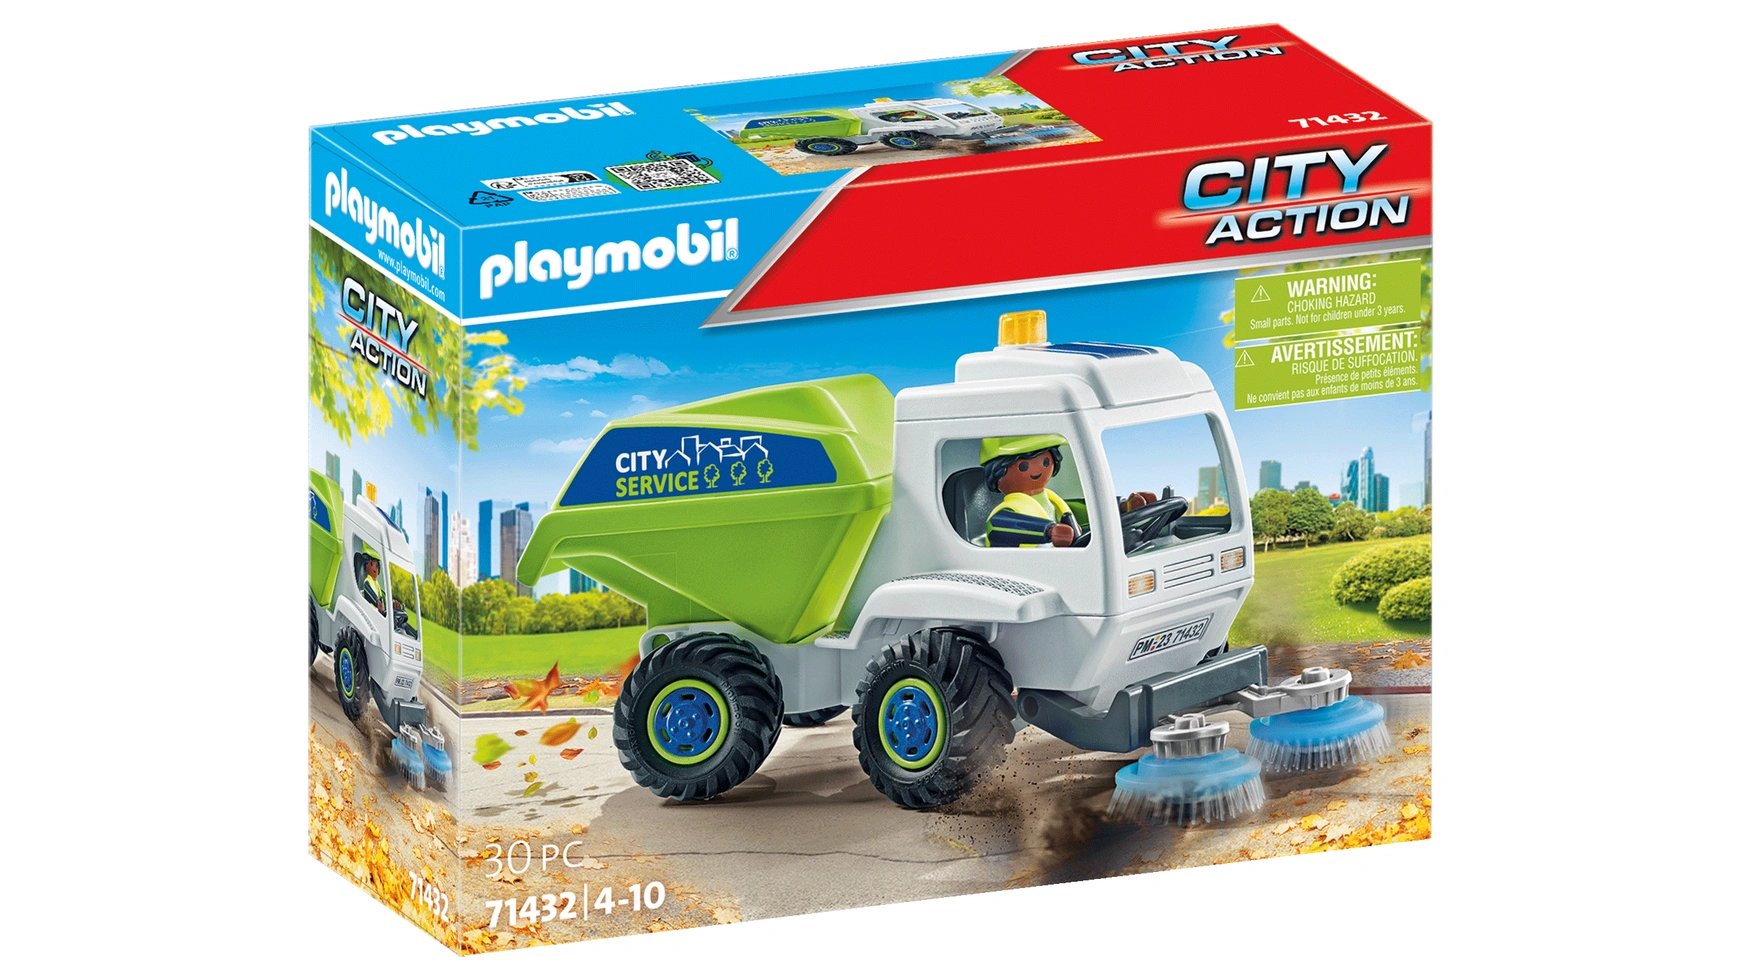 City action подметальная машина Playmobil конструктор playmobil city action 9360 тактическое подразделение грузовик